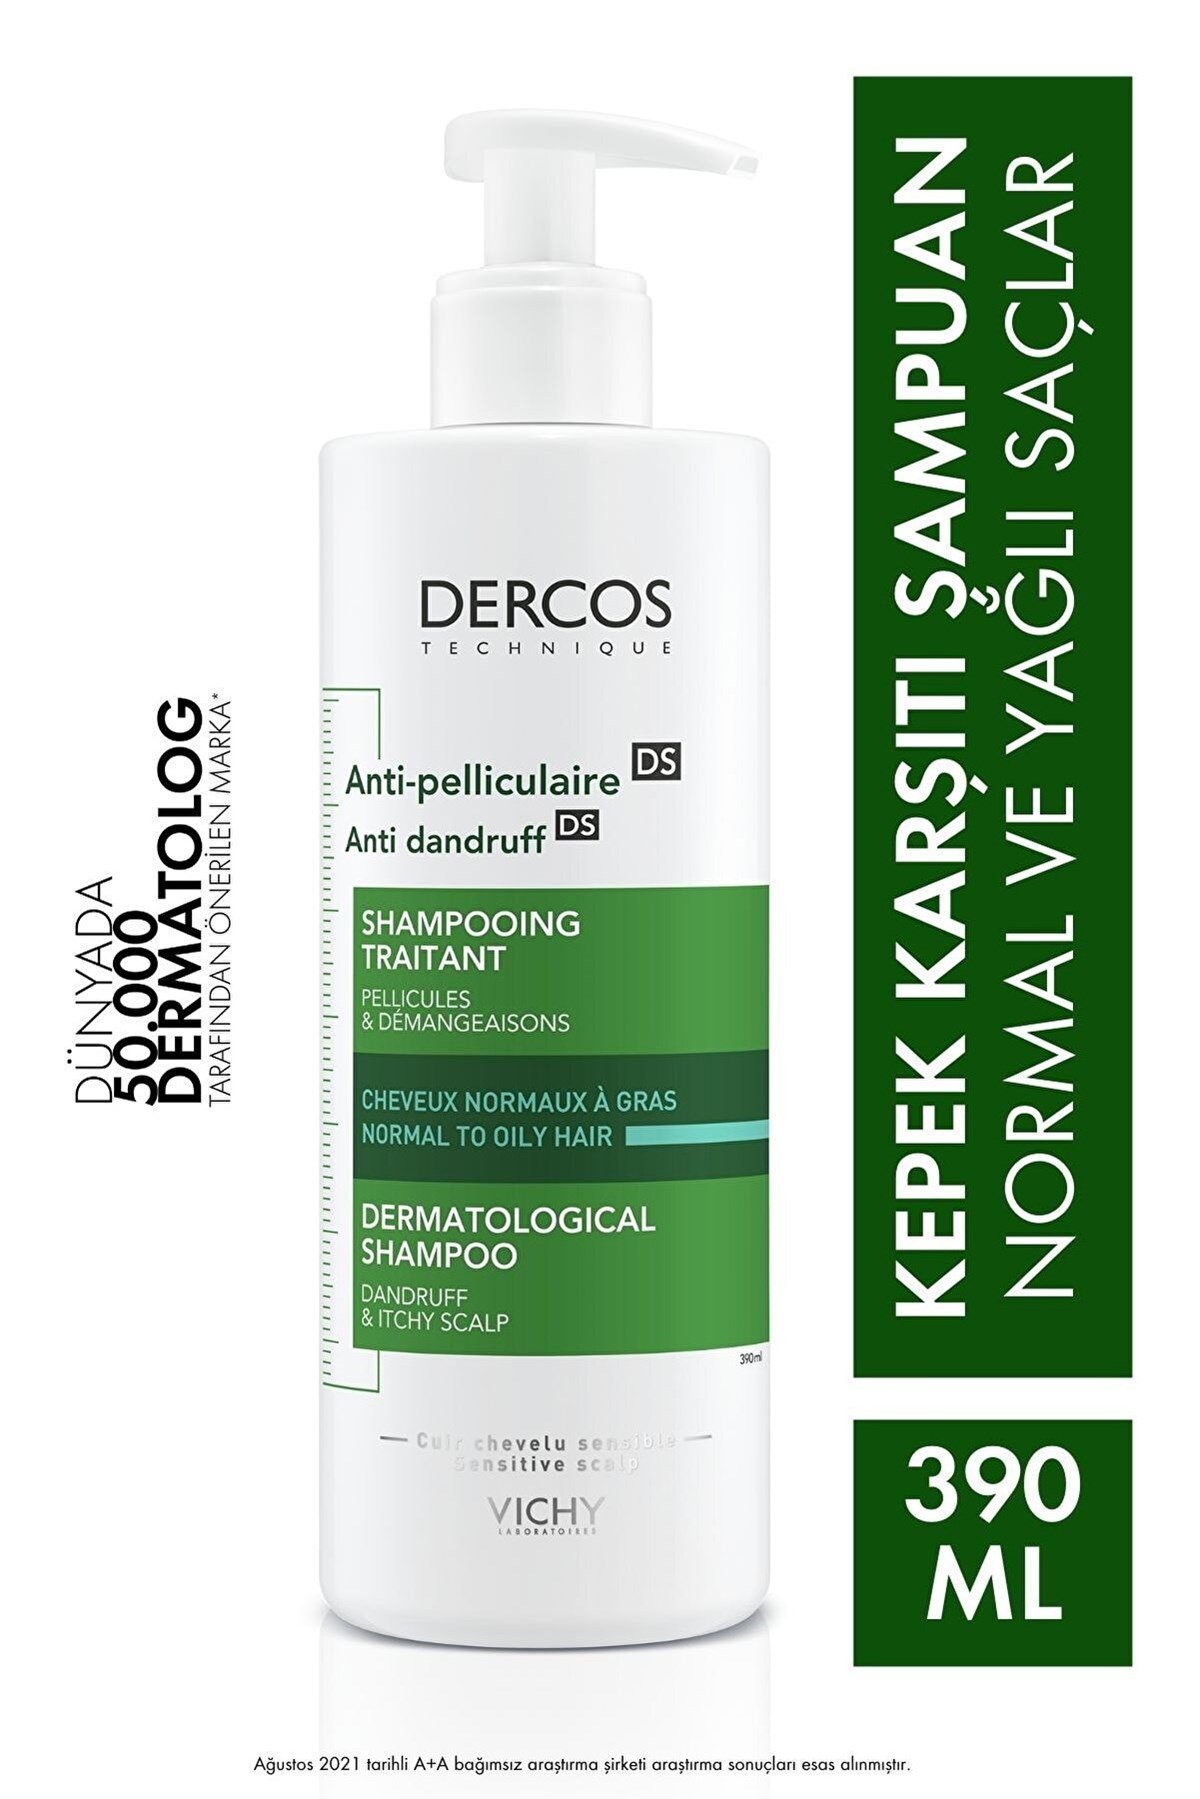 VICHY Dercos Anti Dandruff Shampoo 390 ML | Farma Ucuz